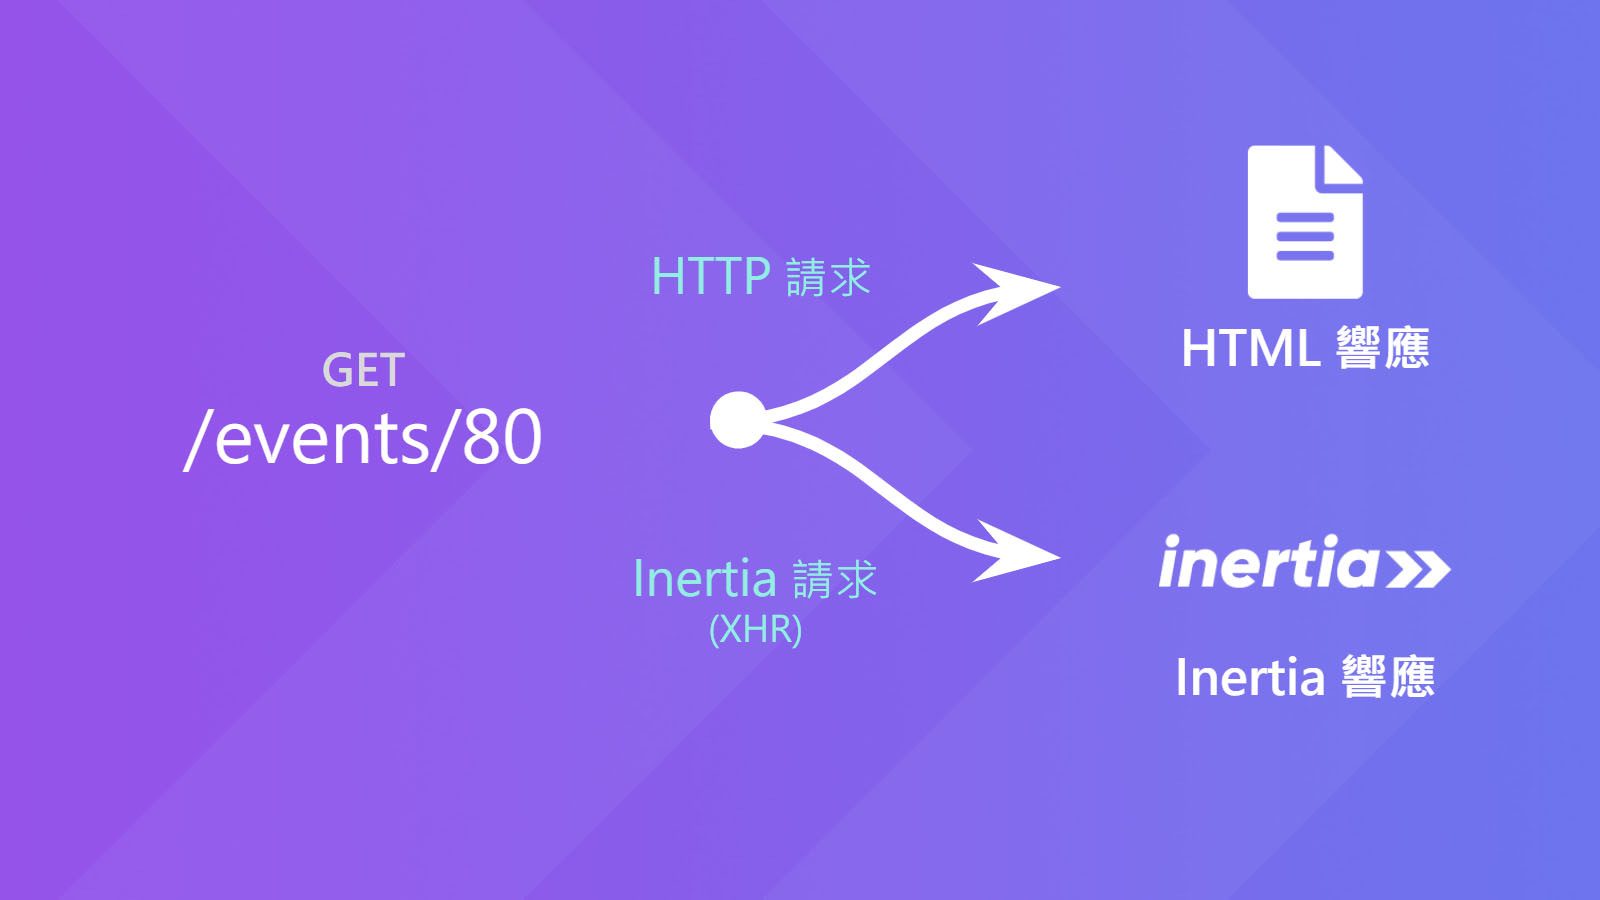 HTTP => HTML (SPA root), XHR (Inertia) => Inertia response